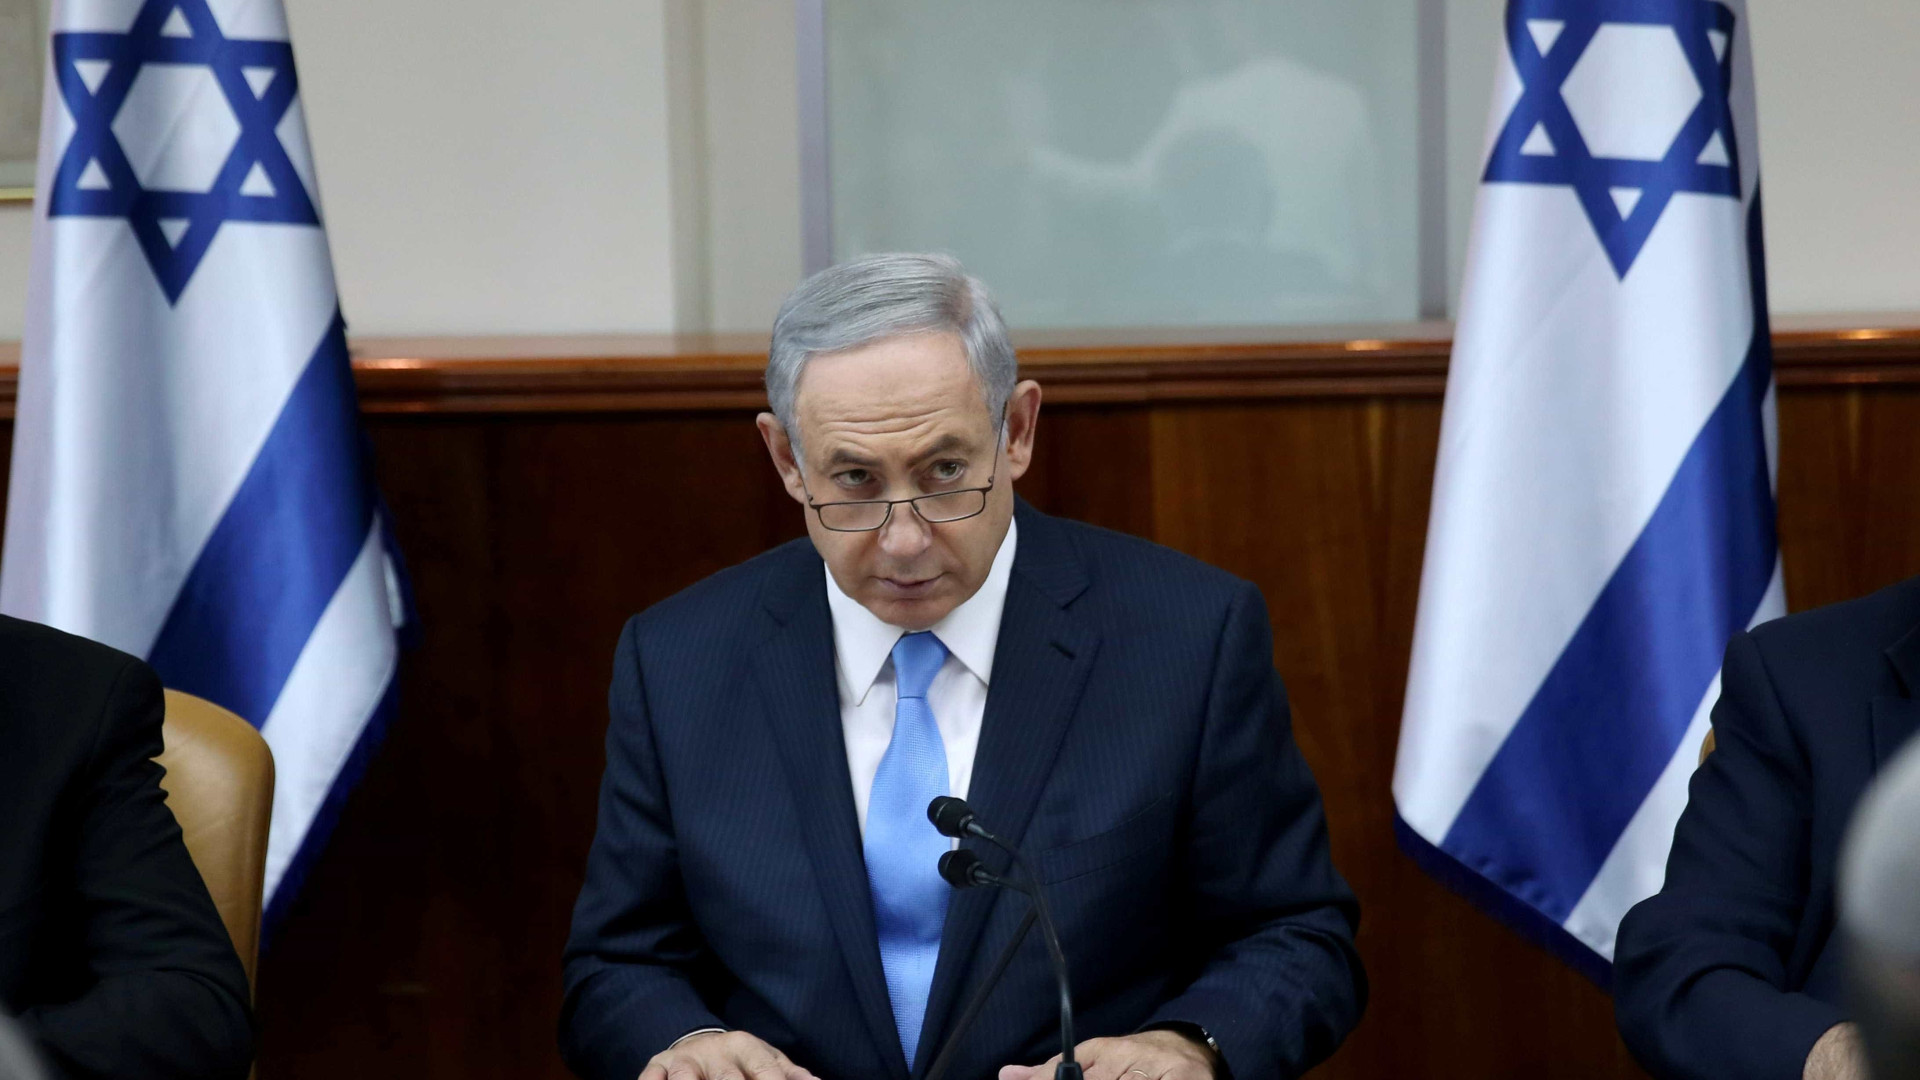 Após resolução, Netanyahu avaliará relações com ONU